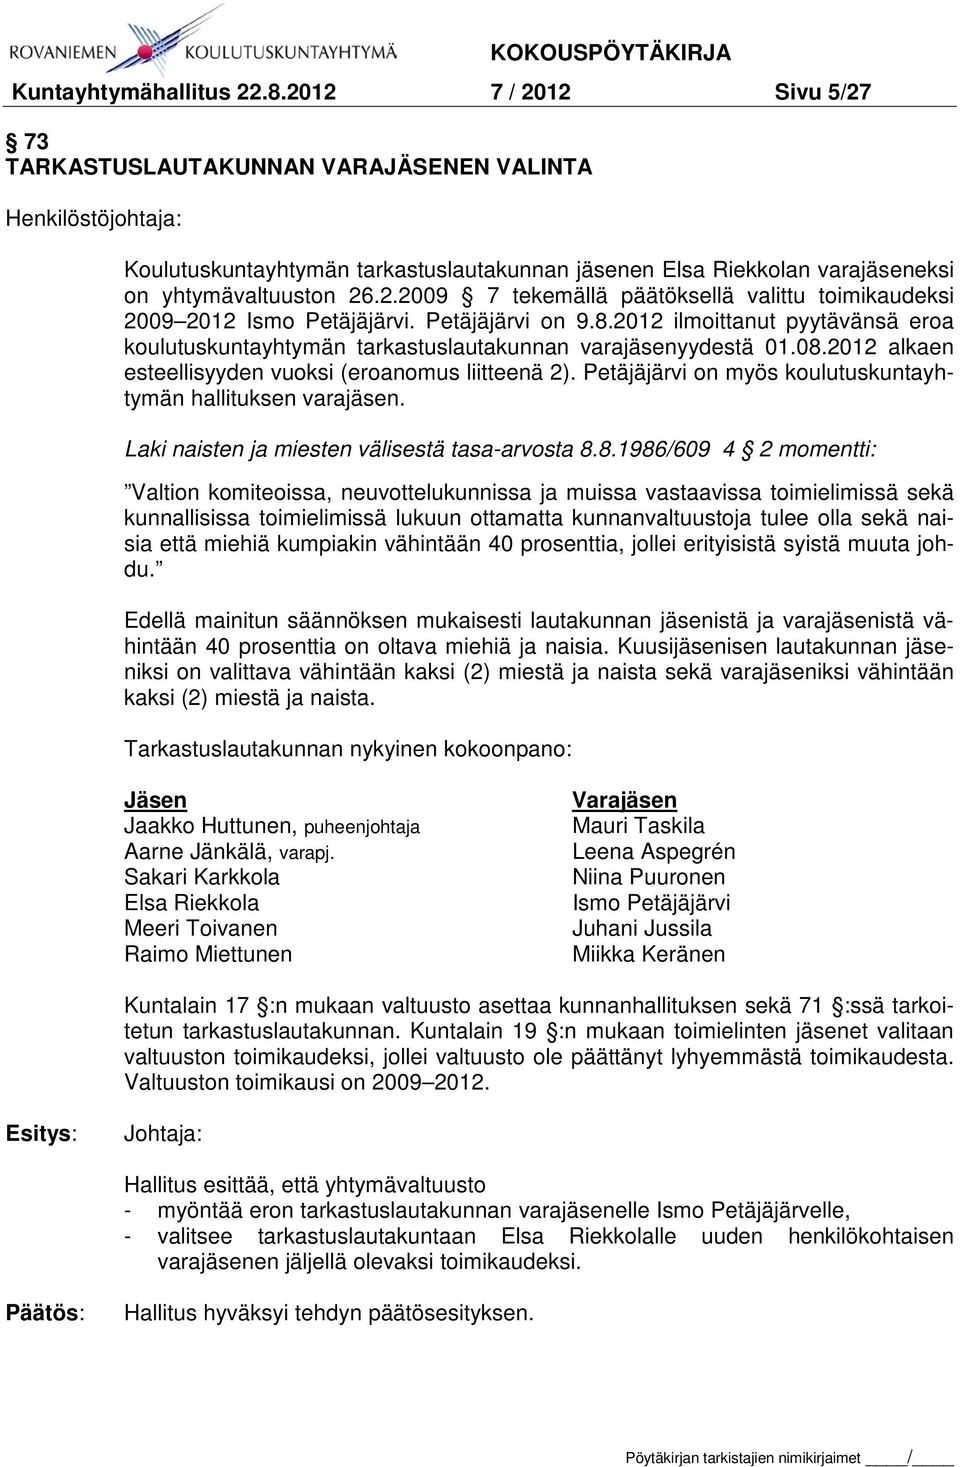 Petäjäjärvi on 9.8.2012 ilmoittanut pyytävänsä eroa koulutuskuntayhtymän tarkastuslautakunnan varajäsenyydestä 01.08.2012 alkaen esteellisyyden vuoksi (eroanomus liitteenä 2).